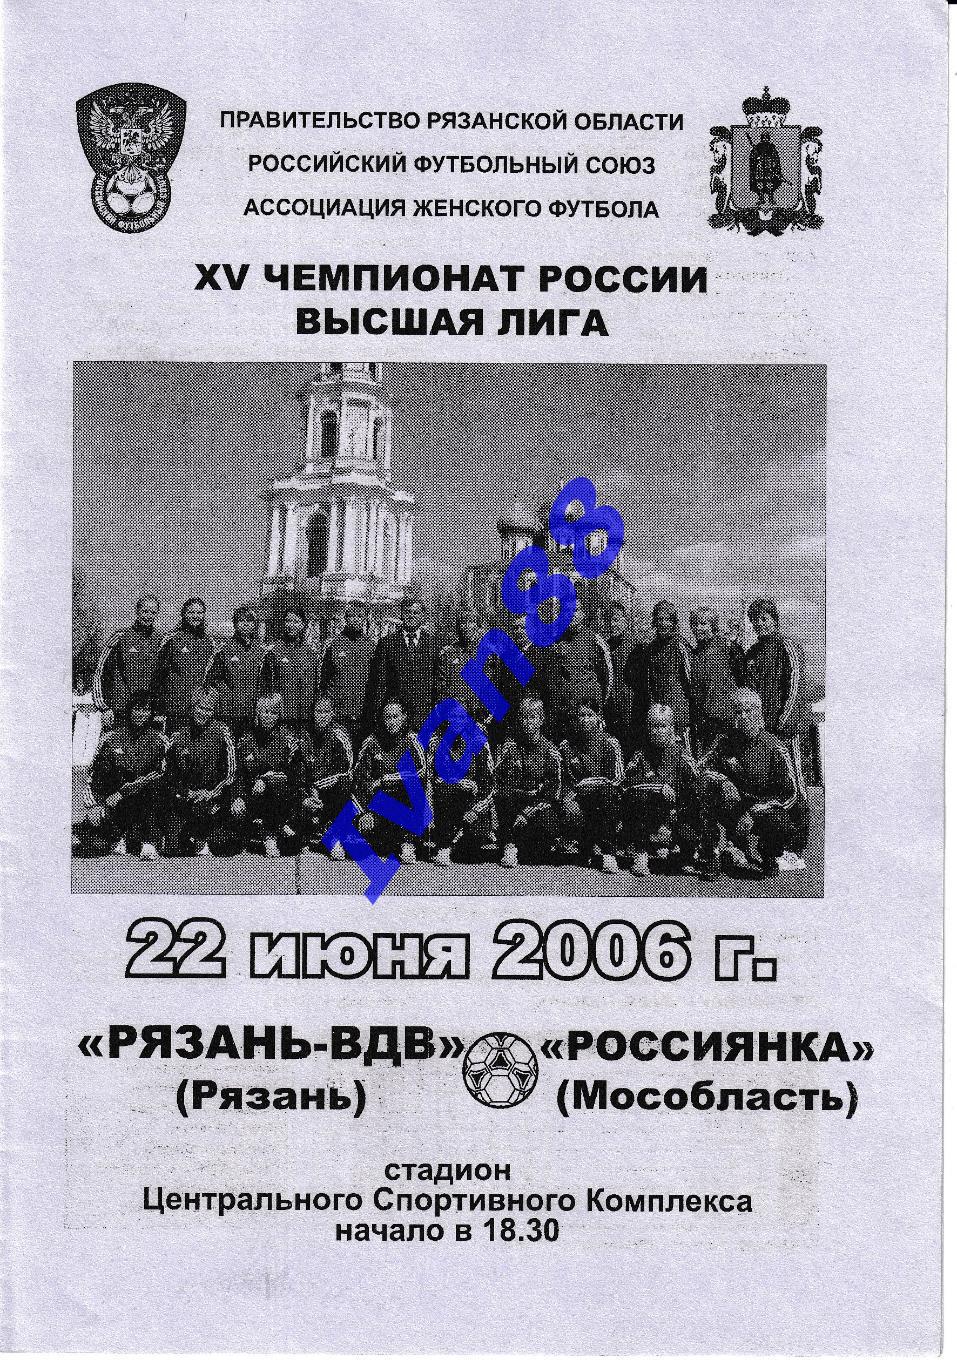 Рязань-ВДВ Рязань - Россиянка Московская область 2006